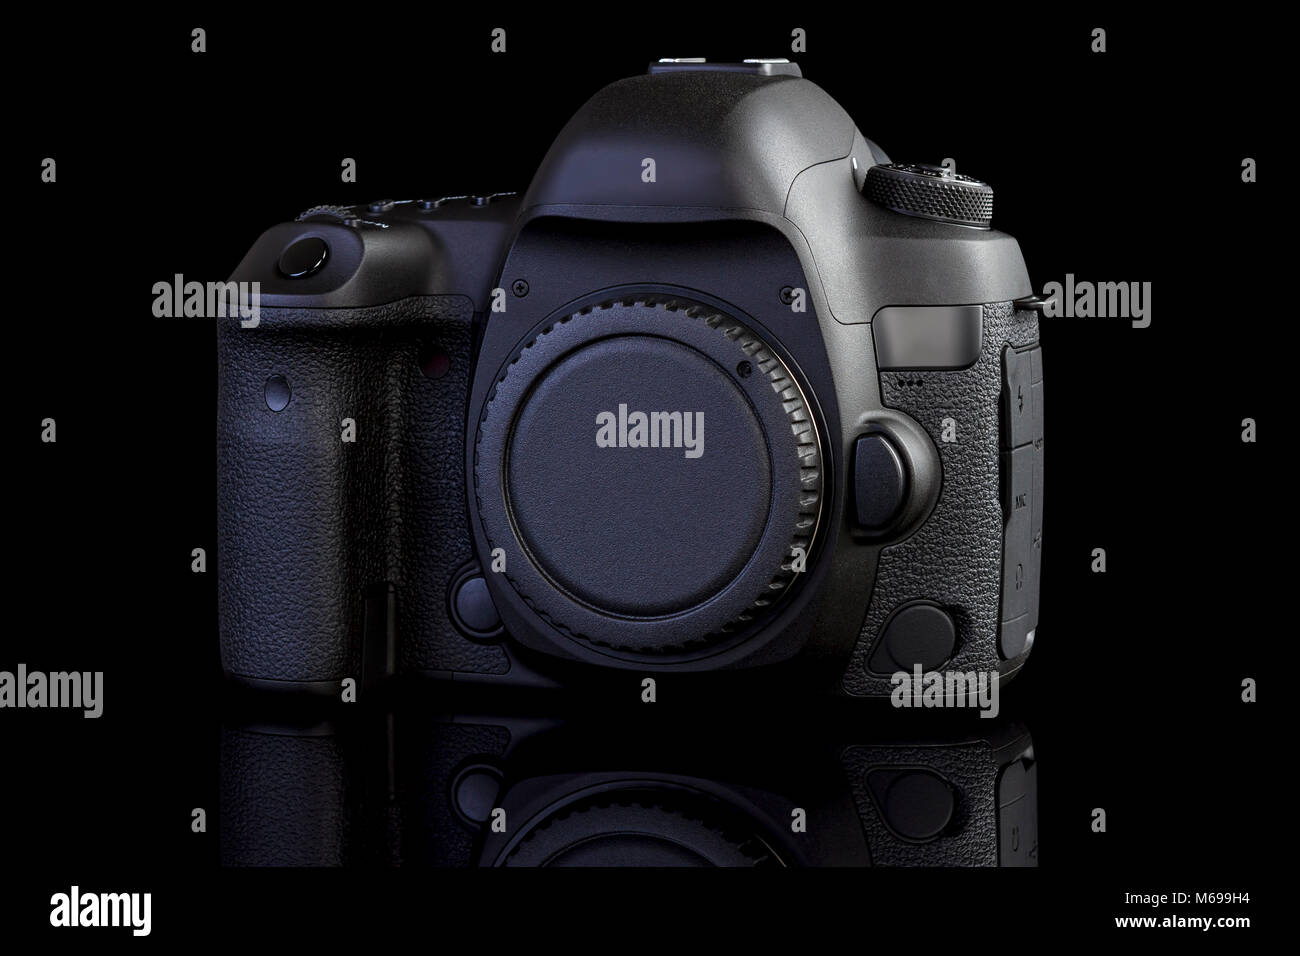 Dslr-Kamera frontale Ansicht auf schwarzen Hintergrund Stockfoto